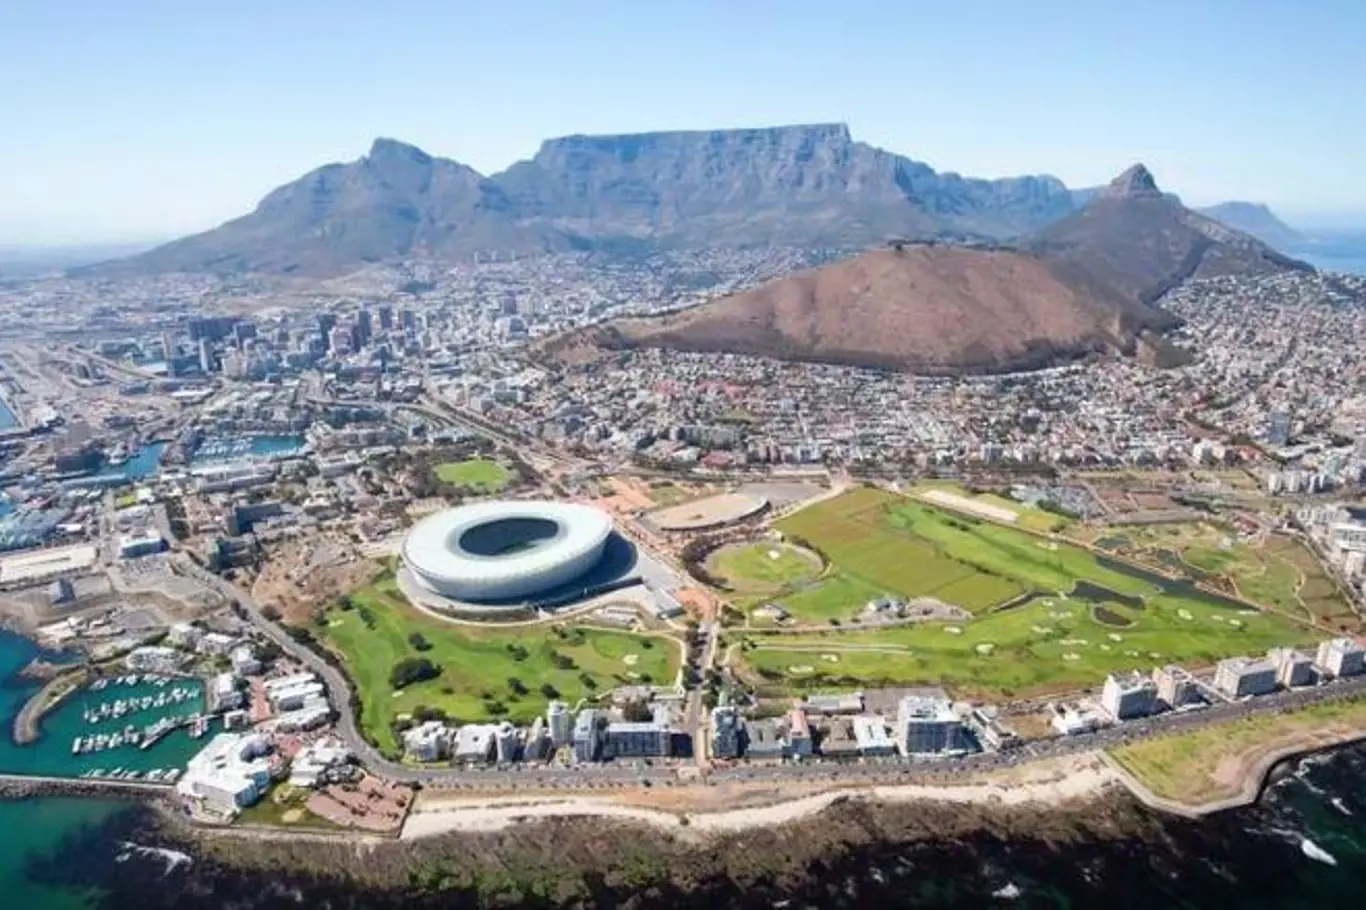 Kapské město, Jižní Afrika – Díky vysoké nezaměstnanosti a z ní pramenící vysoké chudobě se v této oblasti vyvinula také vysoká kriminalita. Pokud se sem přece jen vydáte dovolenkovat, držte se jen na bezpečných místech.